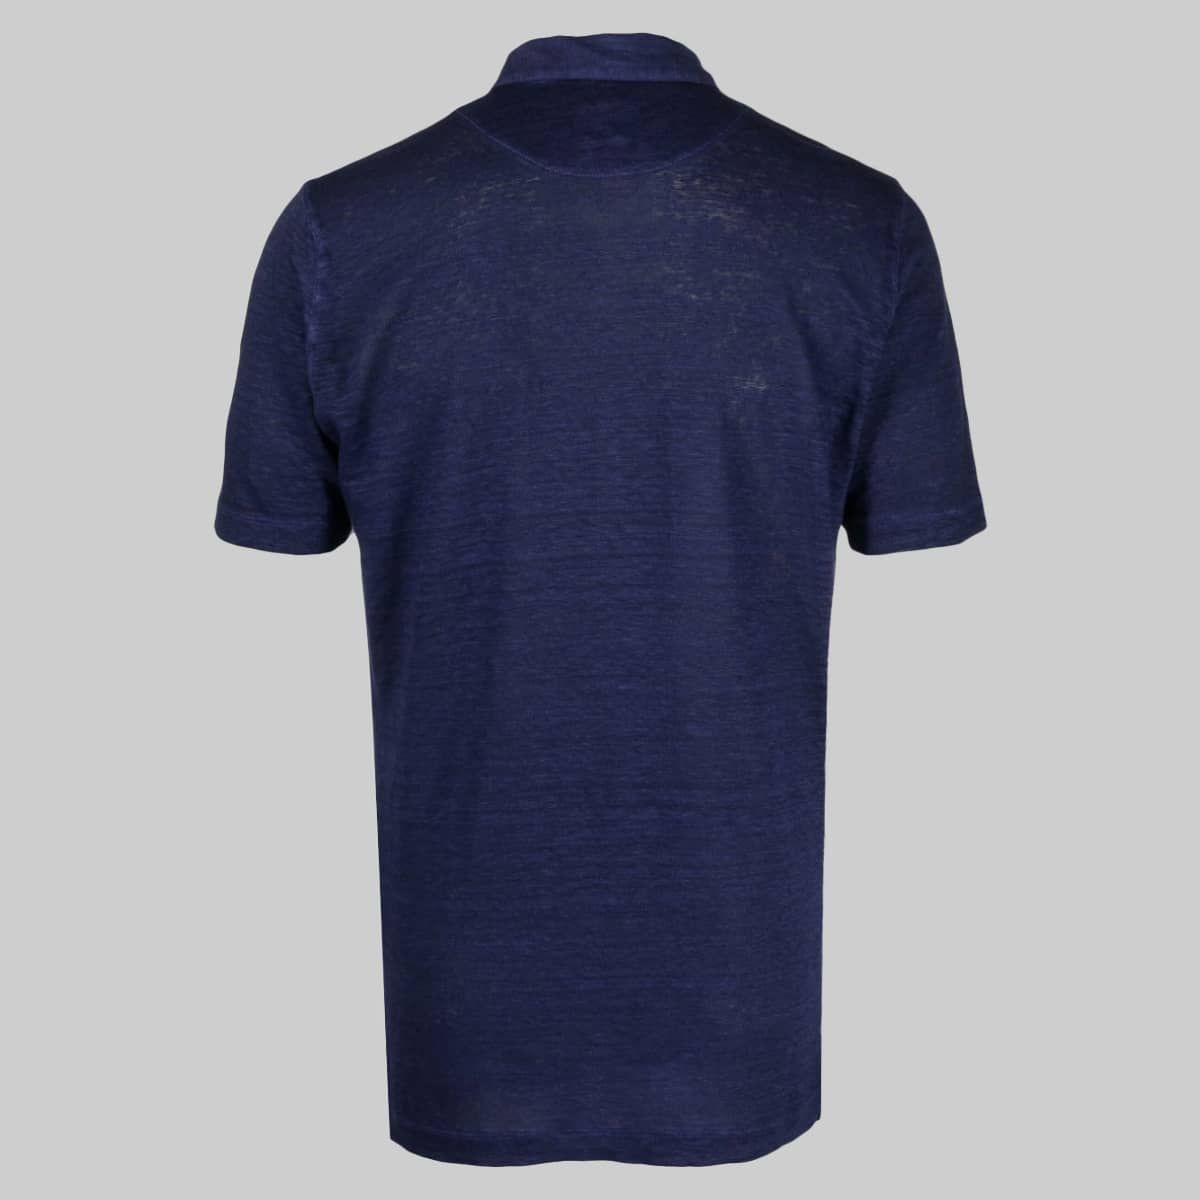 Μélange Semi-Sheer Polo Shirt